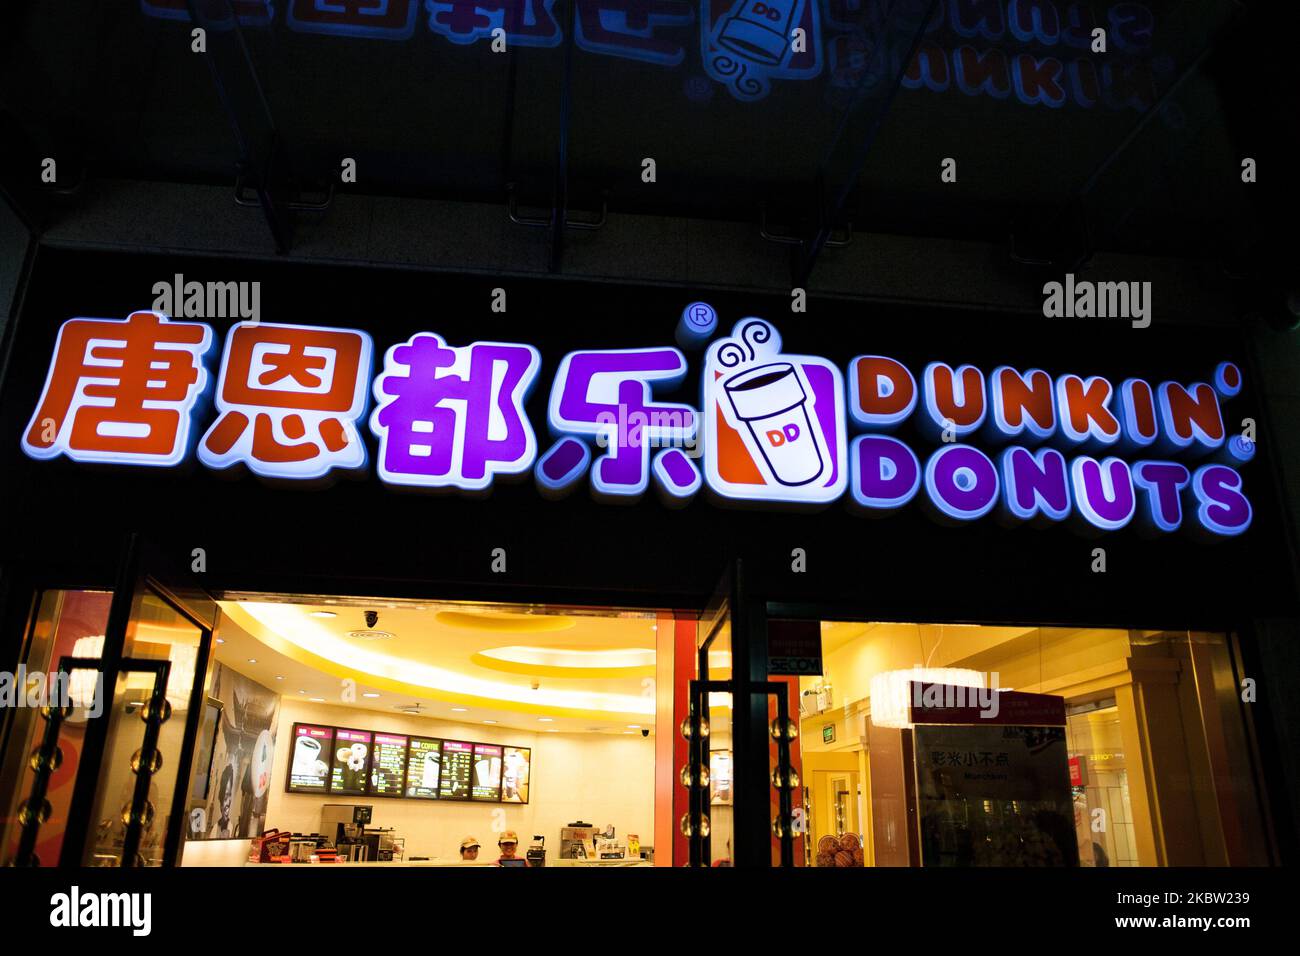 Un cartello illuminato dalla franchigia di fast food dunky Donuts su una strada. Il 2 marzo 2012, a Shenzhen, Cina. (Foto Illustrazione di Emeric Fohlen/NurPhoto) Foto Stock